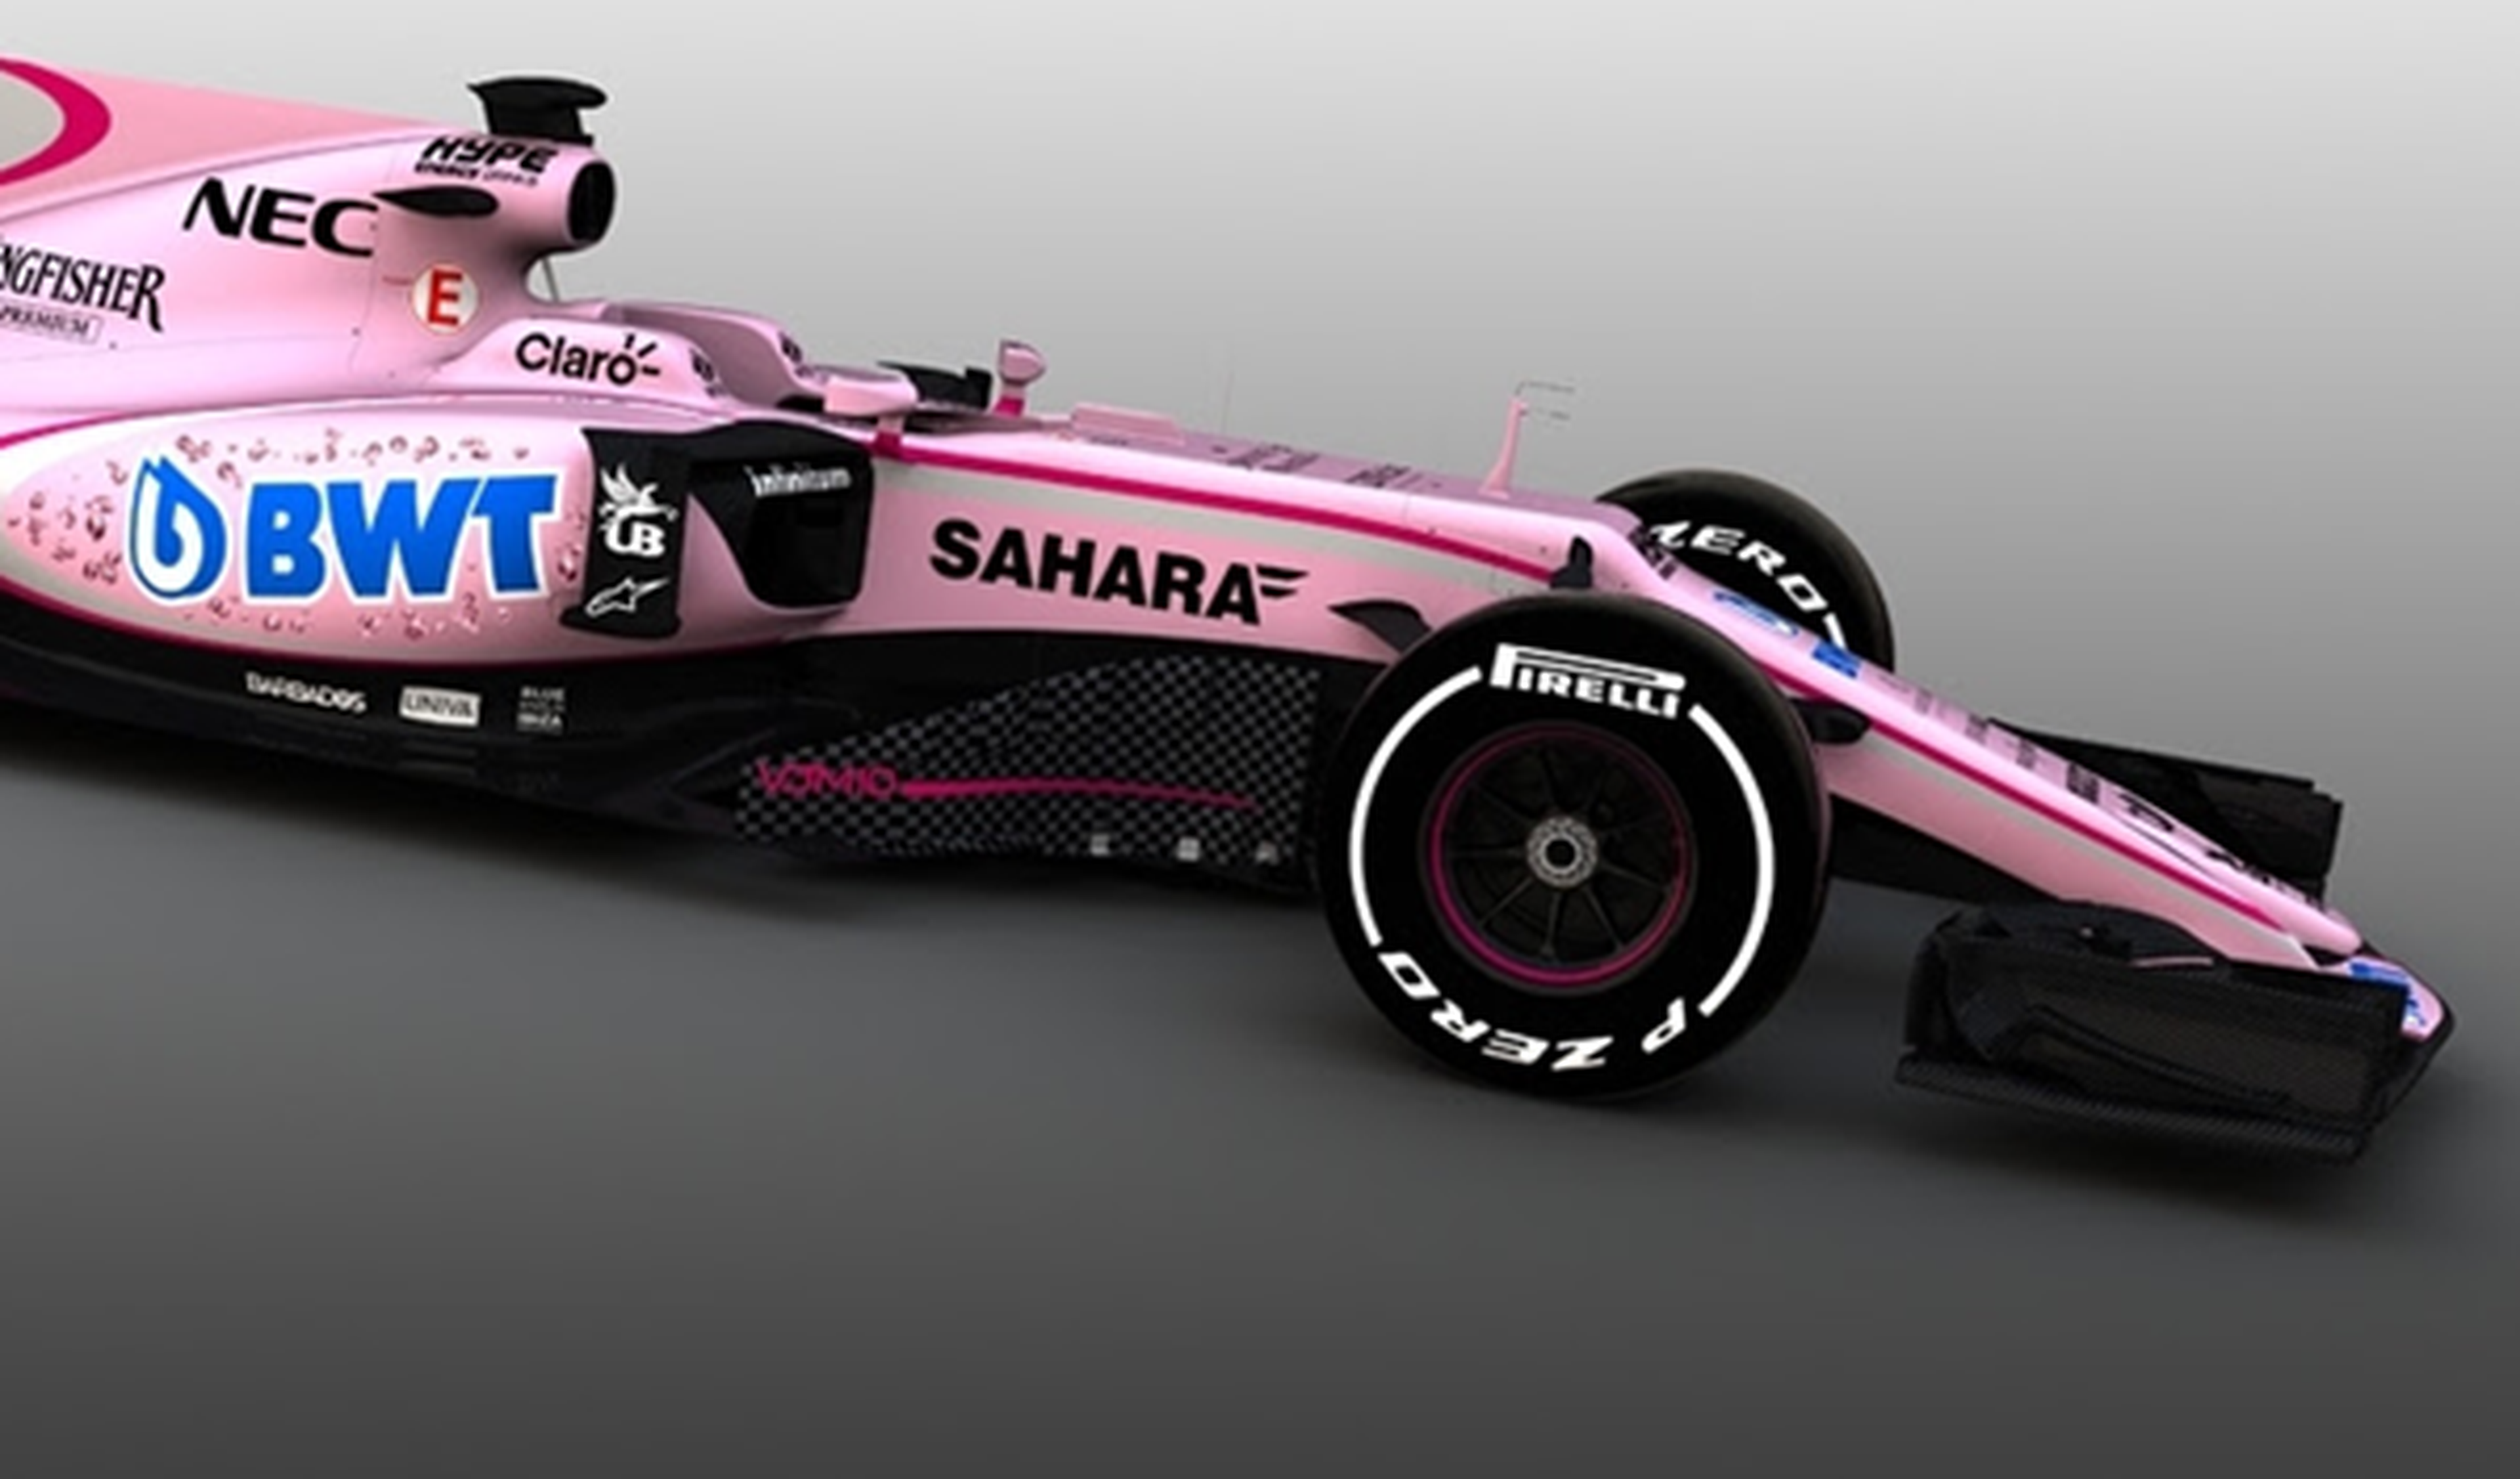 Nueva decoración para el Force India, ¡en color rosa!